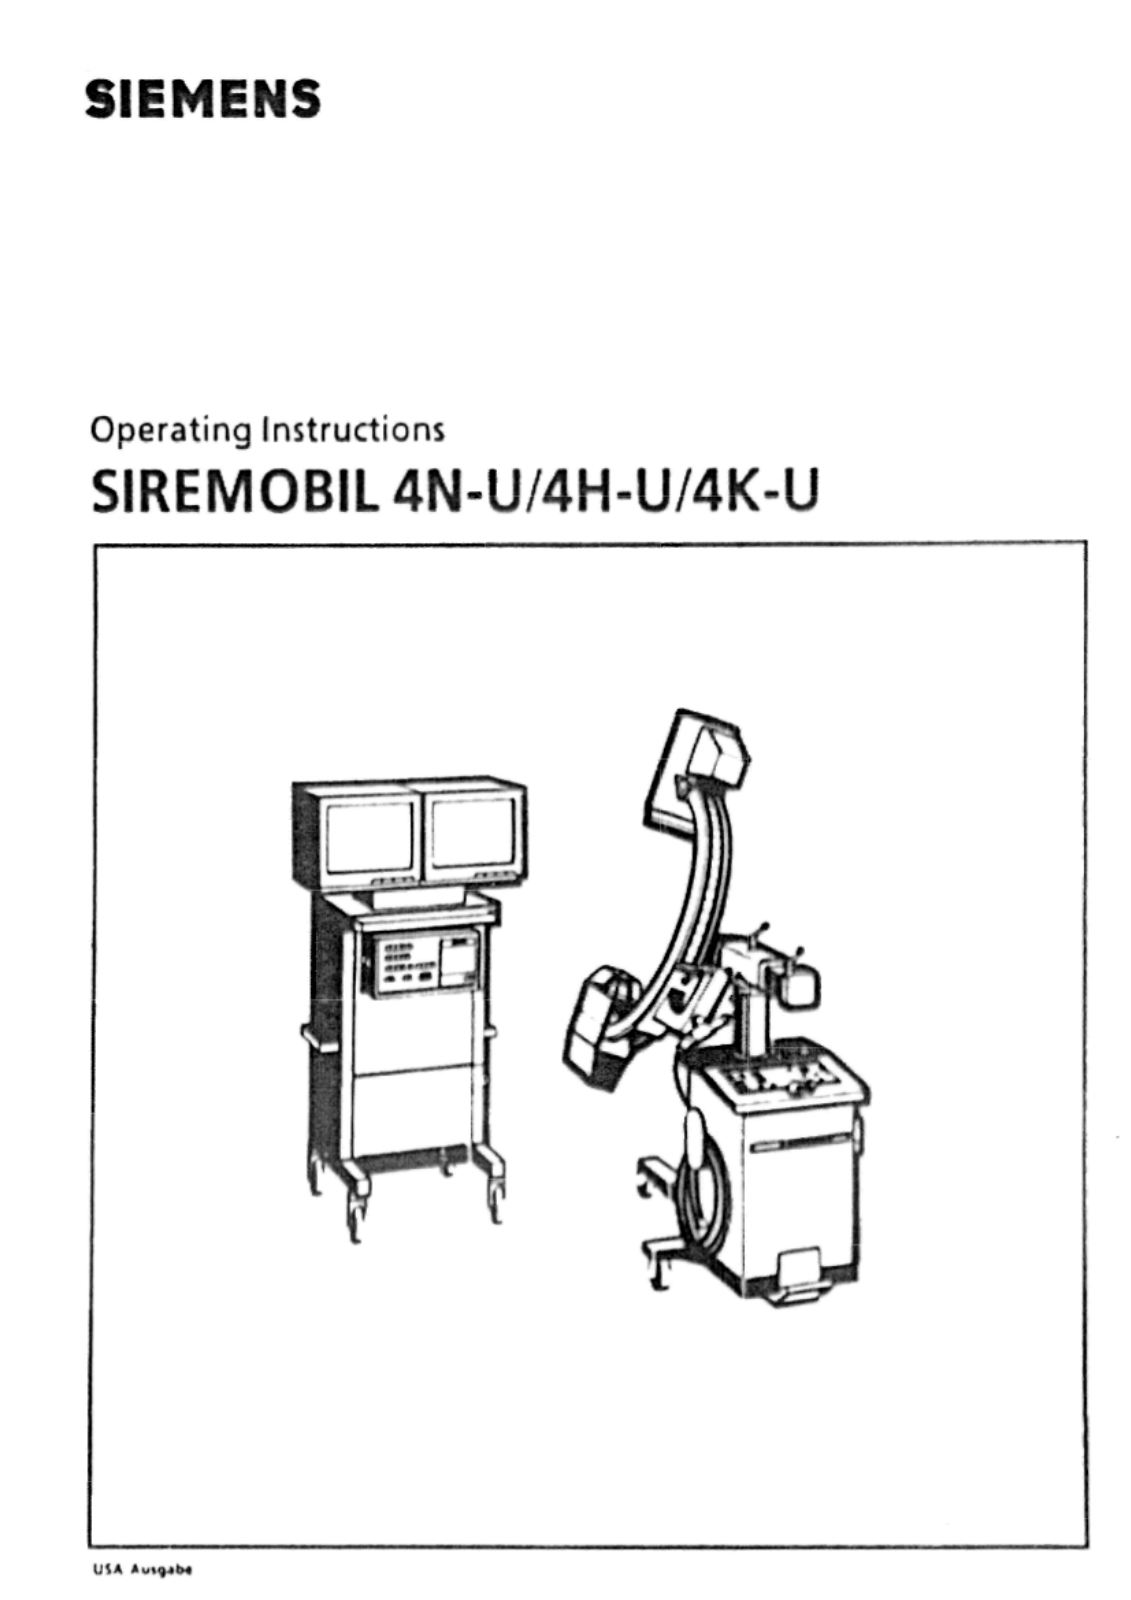 Siemens Siremobil 4 C-Arm User Manual